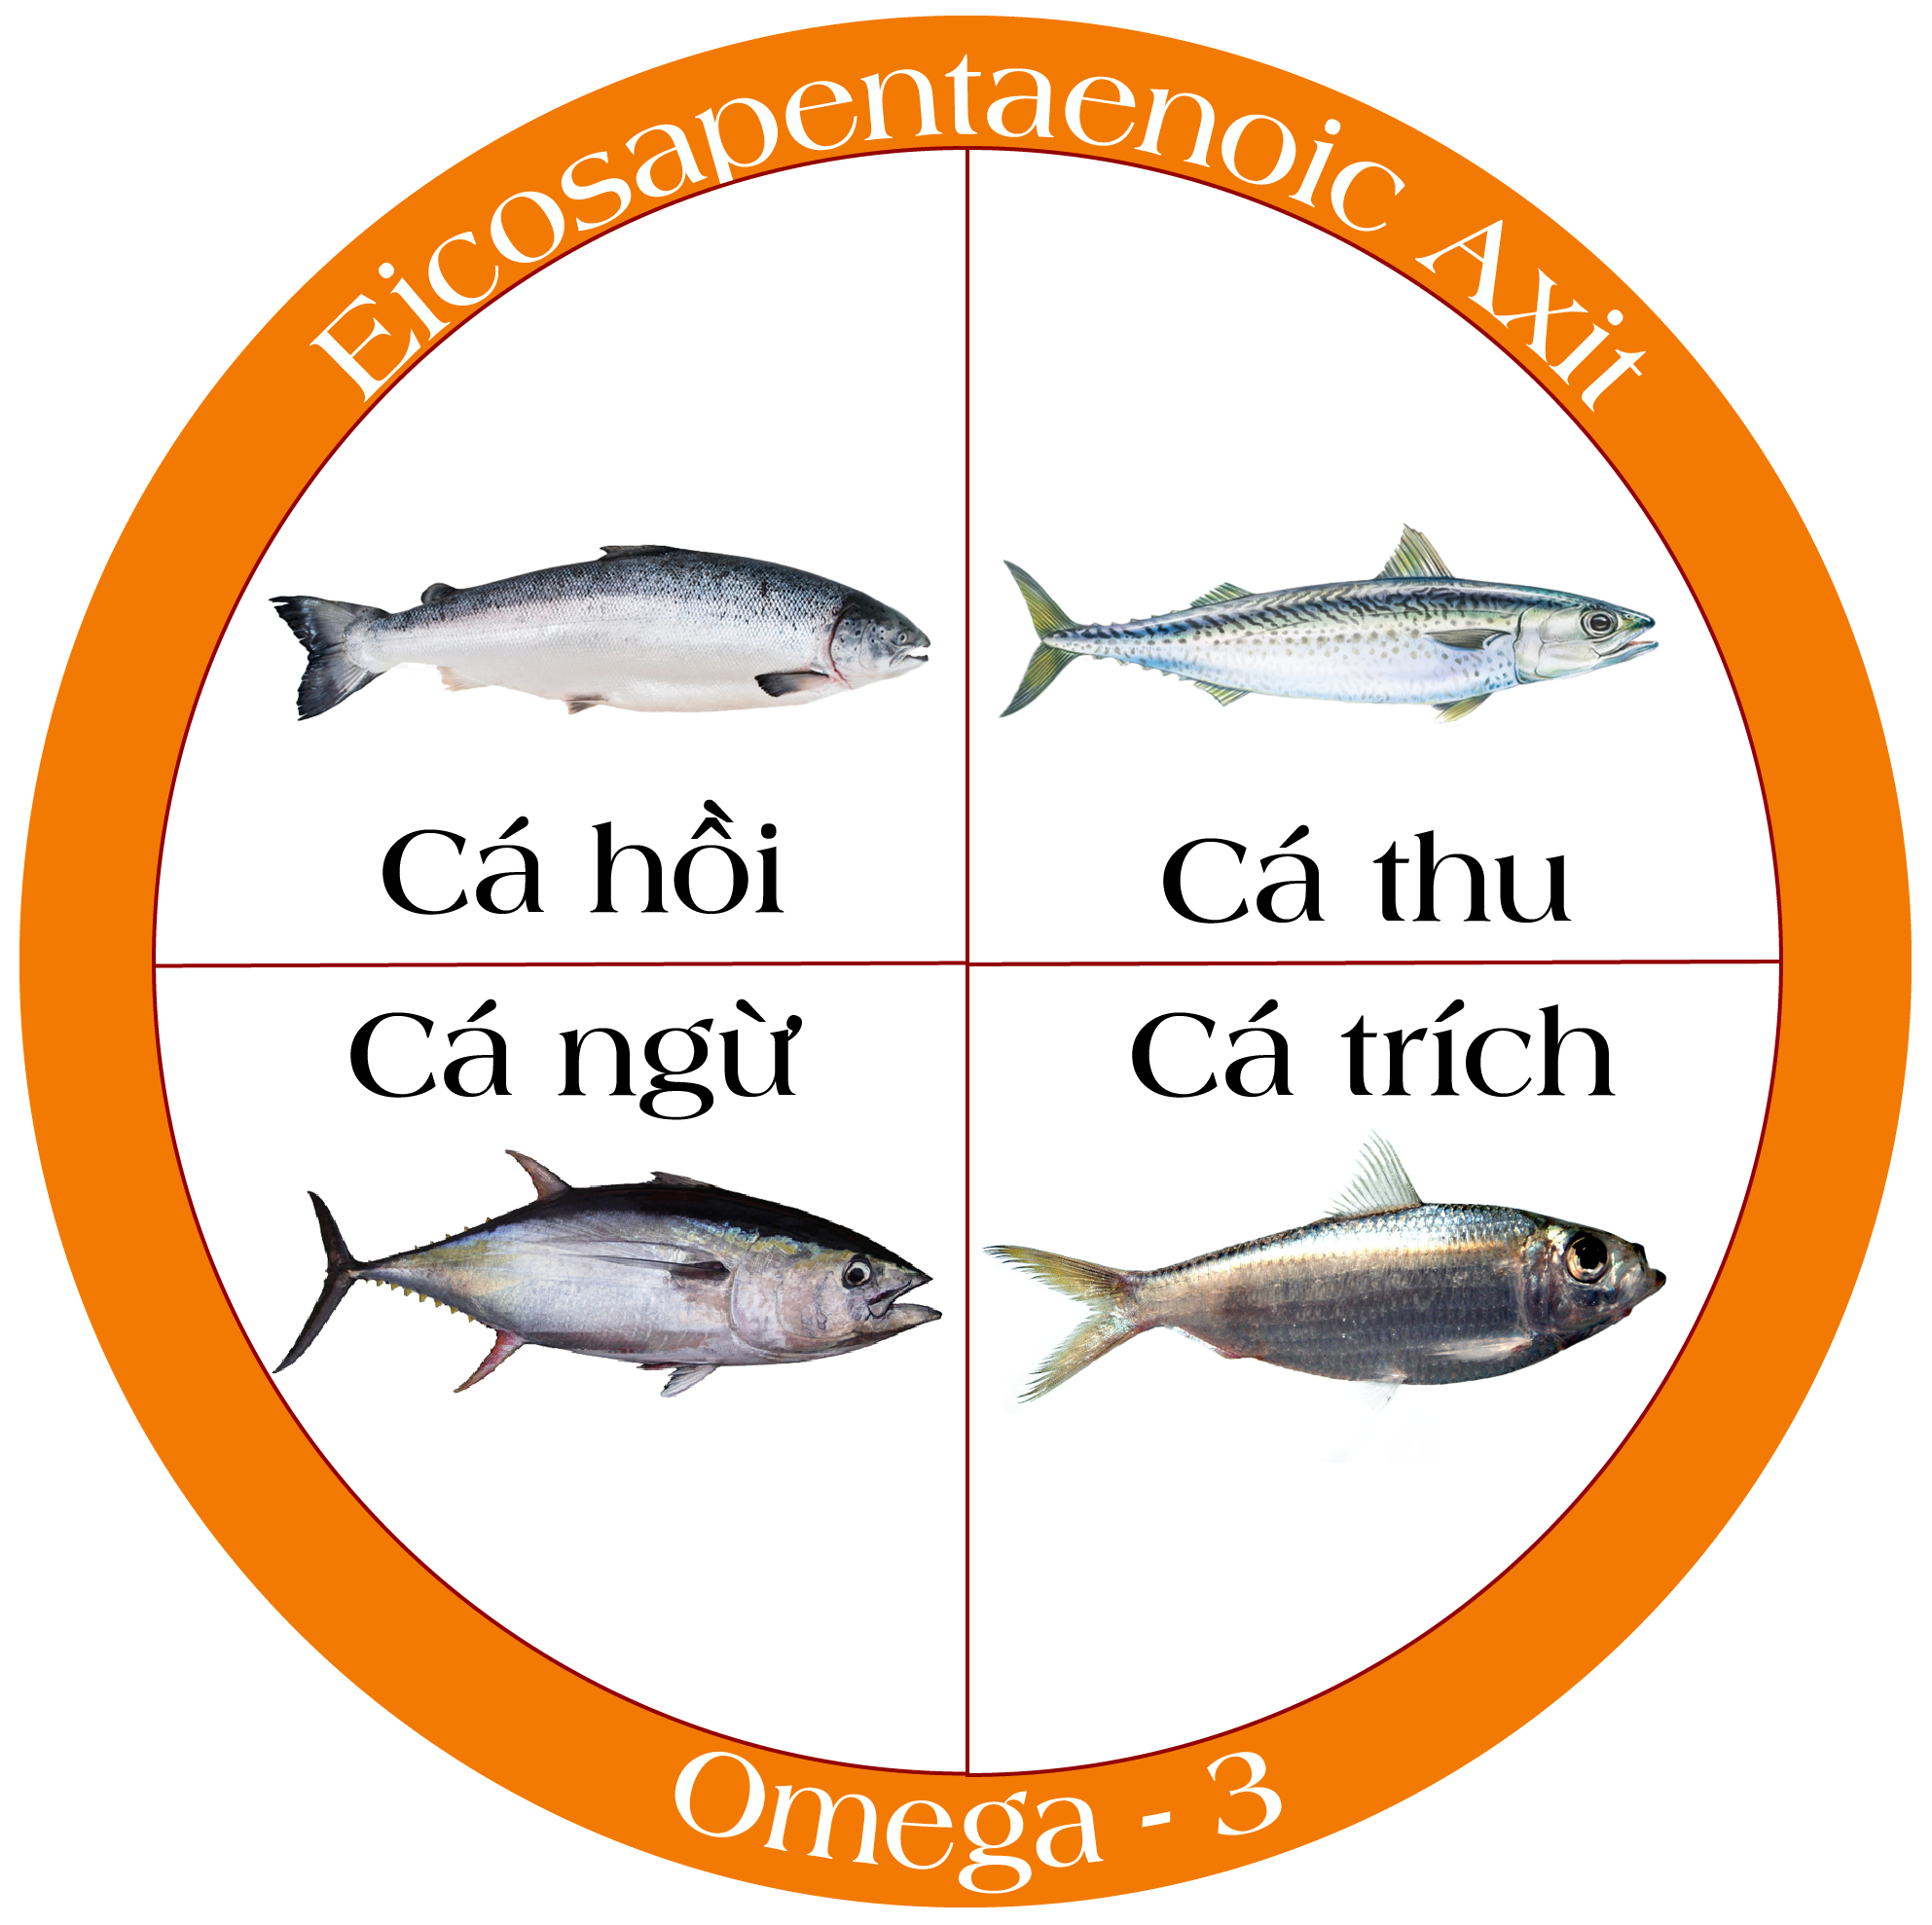 Cá chứa hàm lượng EPA cao